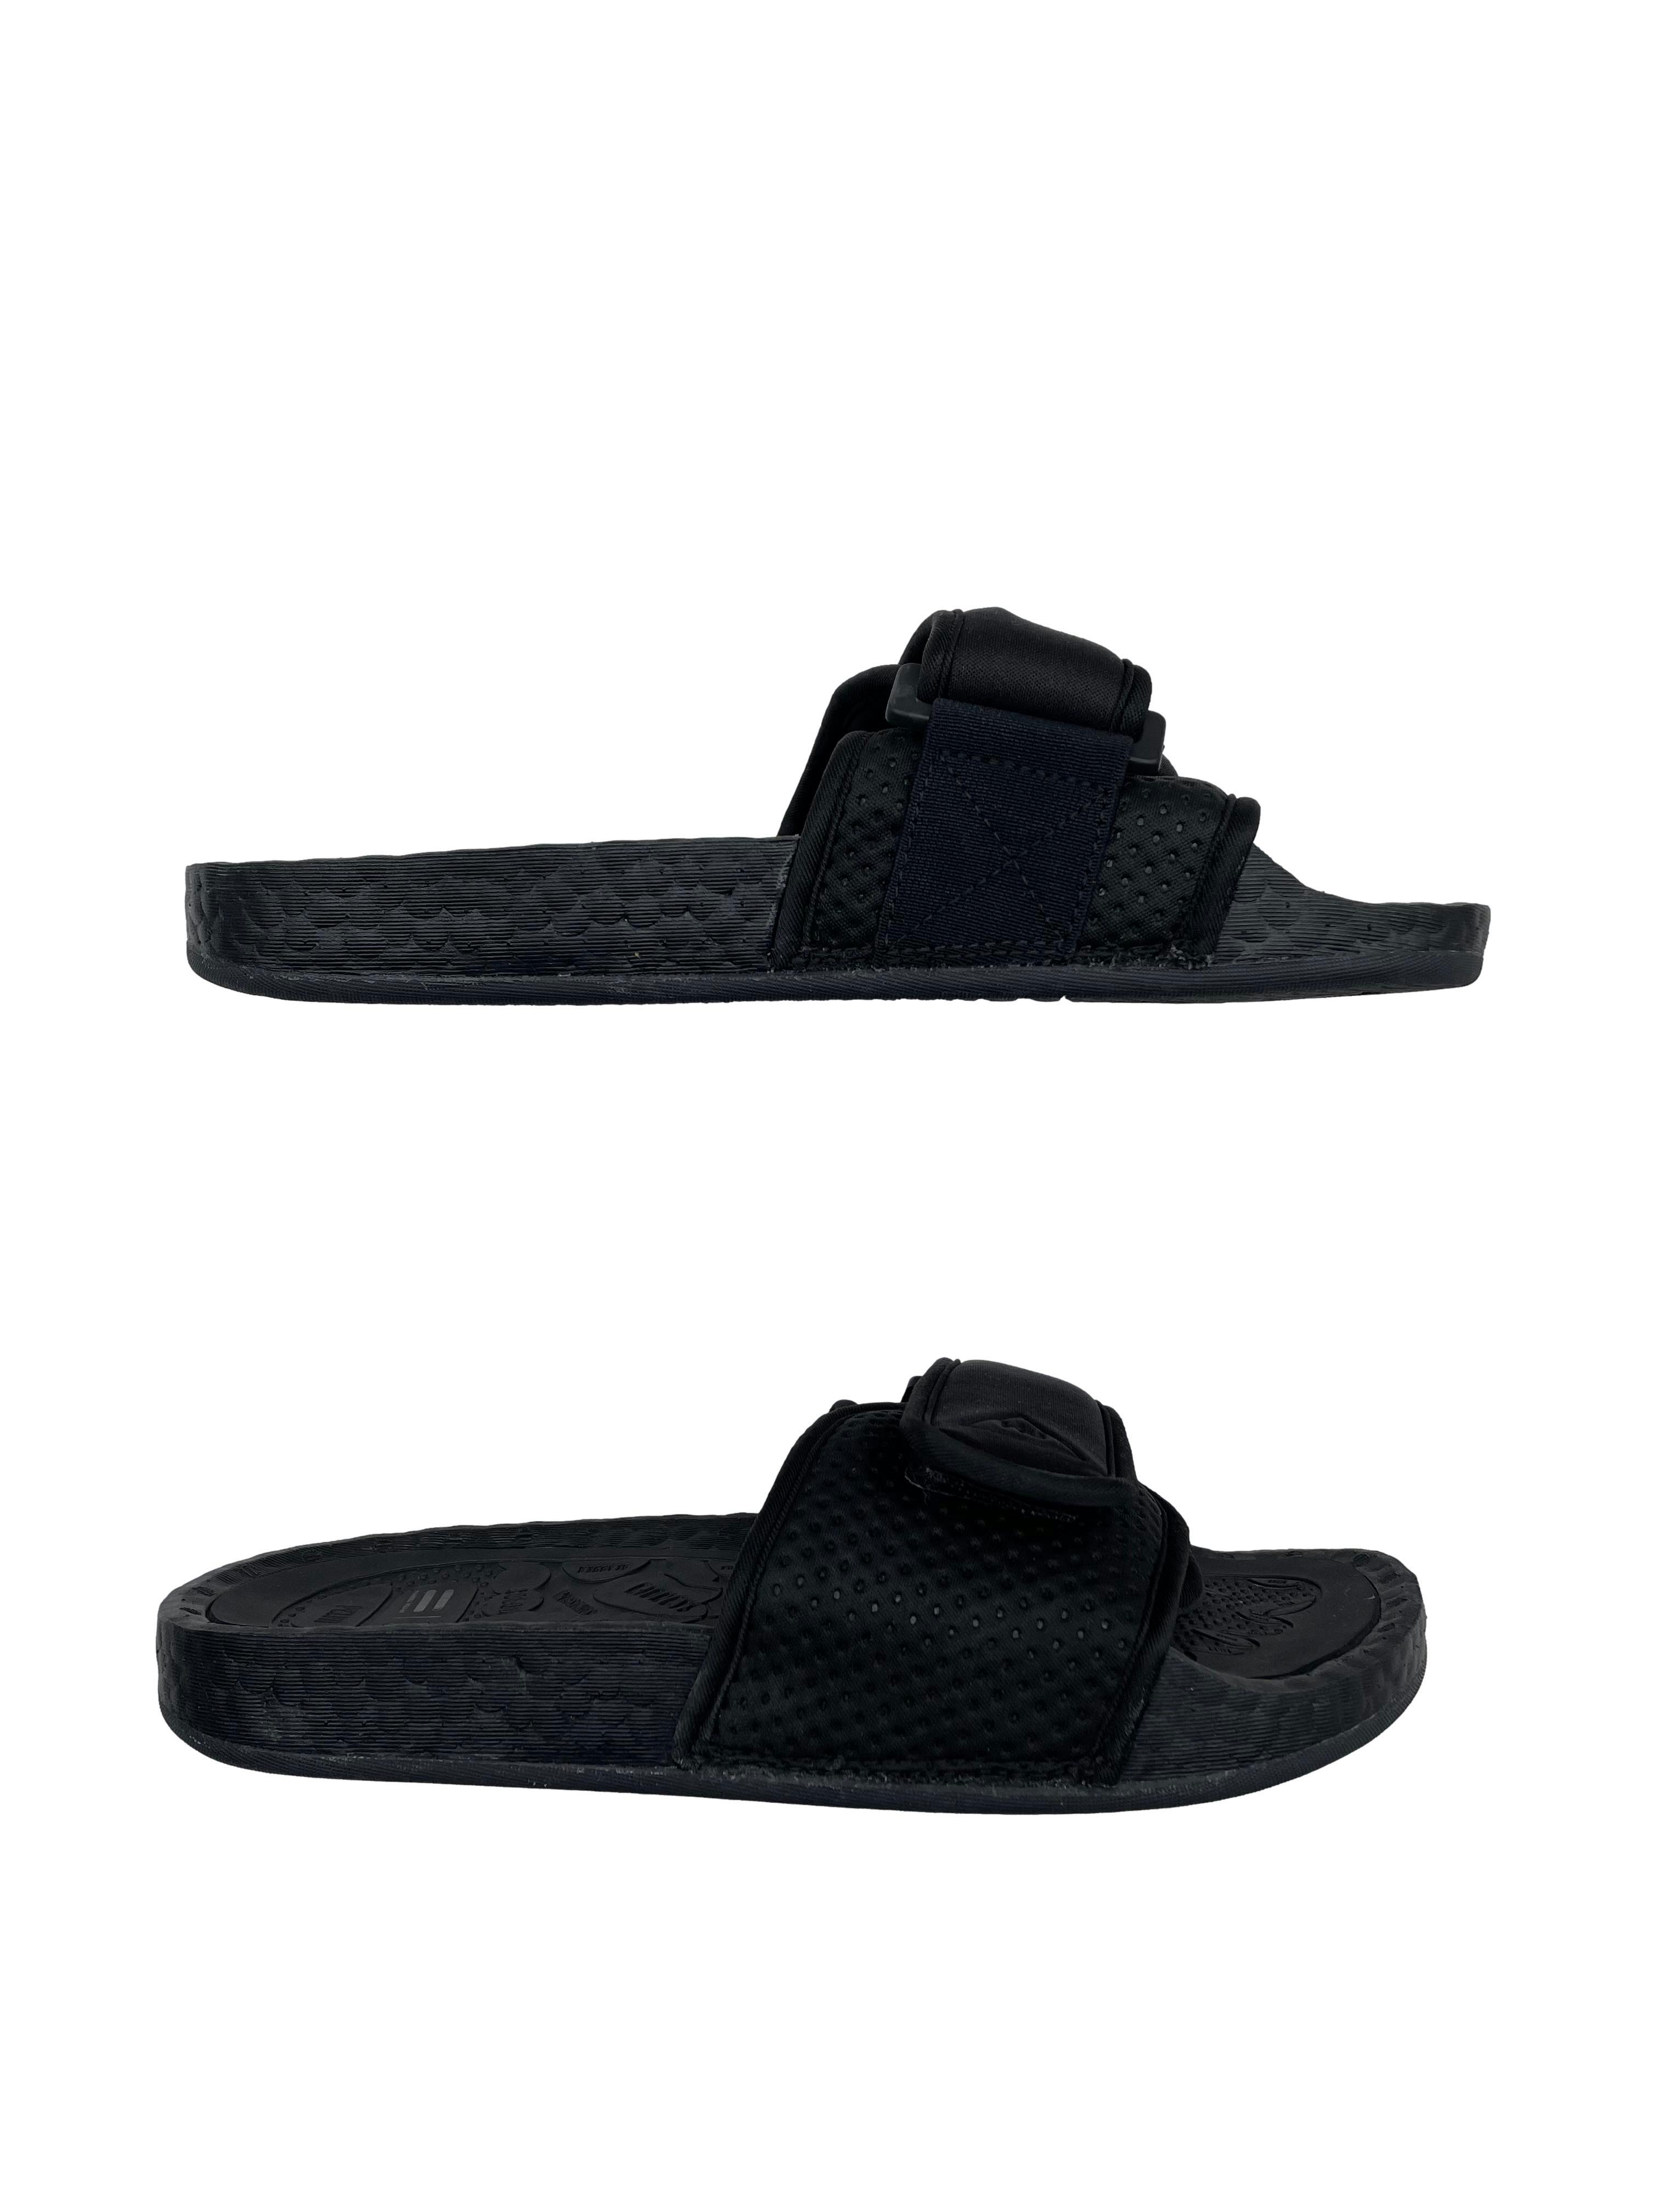 Sandalias Adidas Pharrell Williams negras, empeine acolchado y con velcro. Nuevas, precio original S/ 350